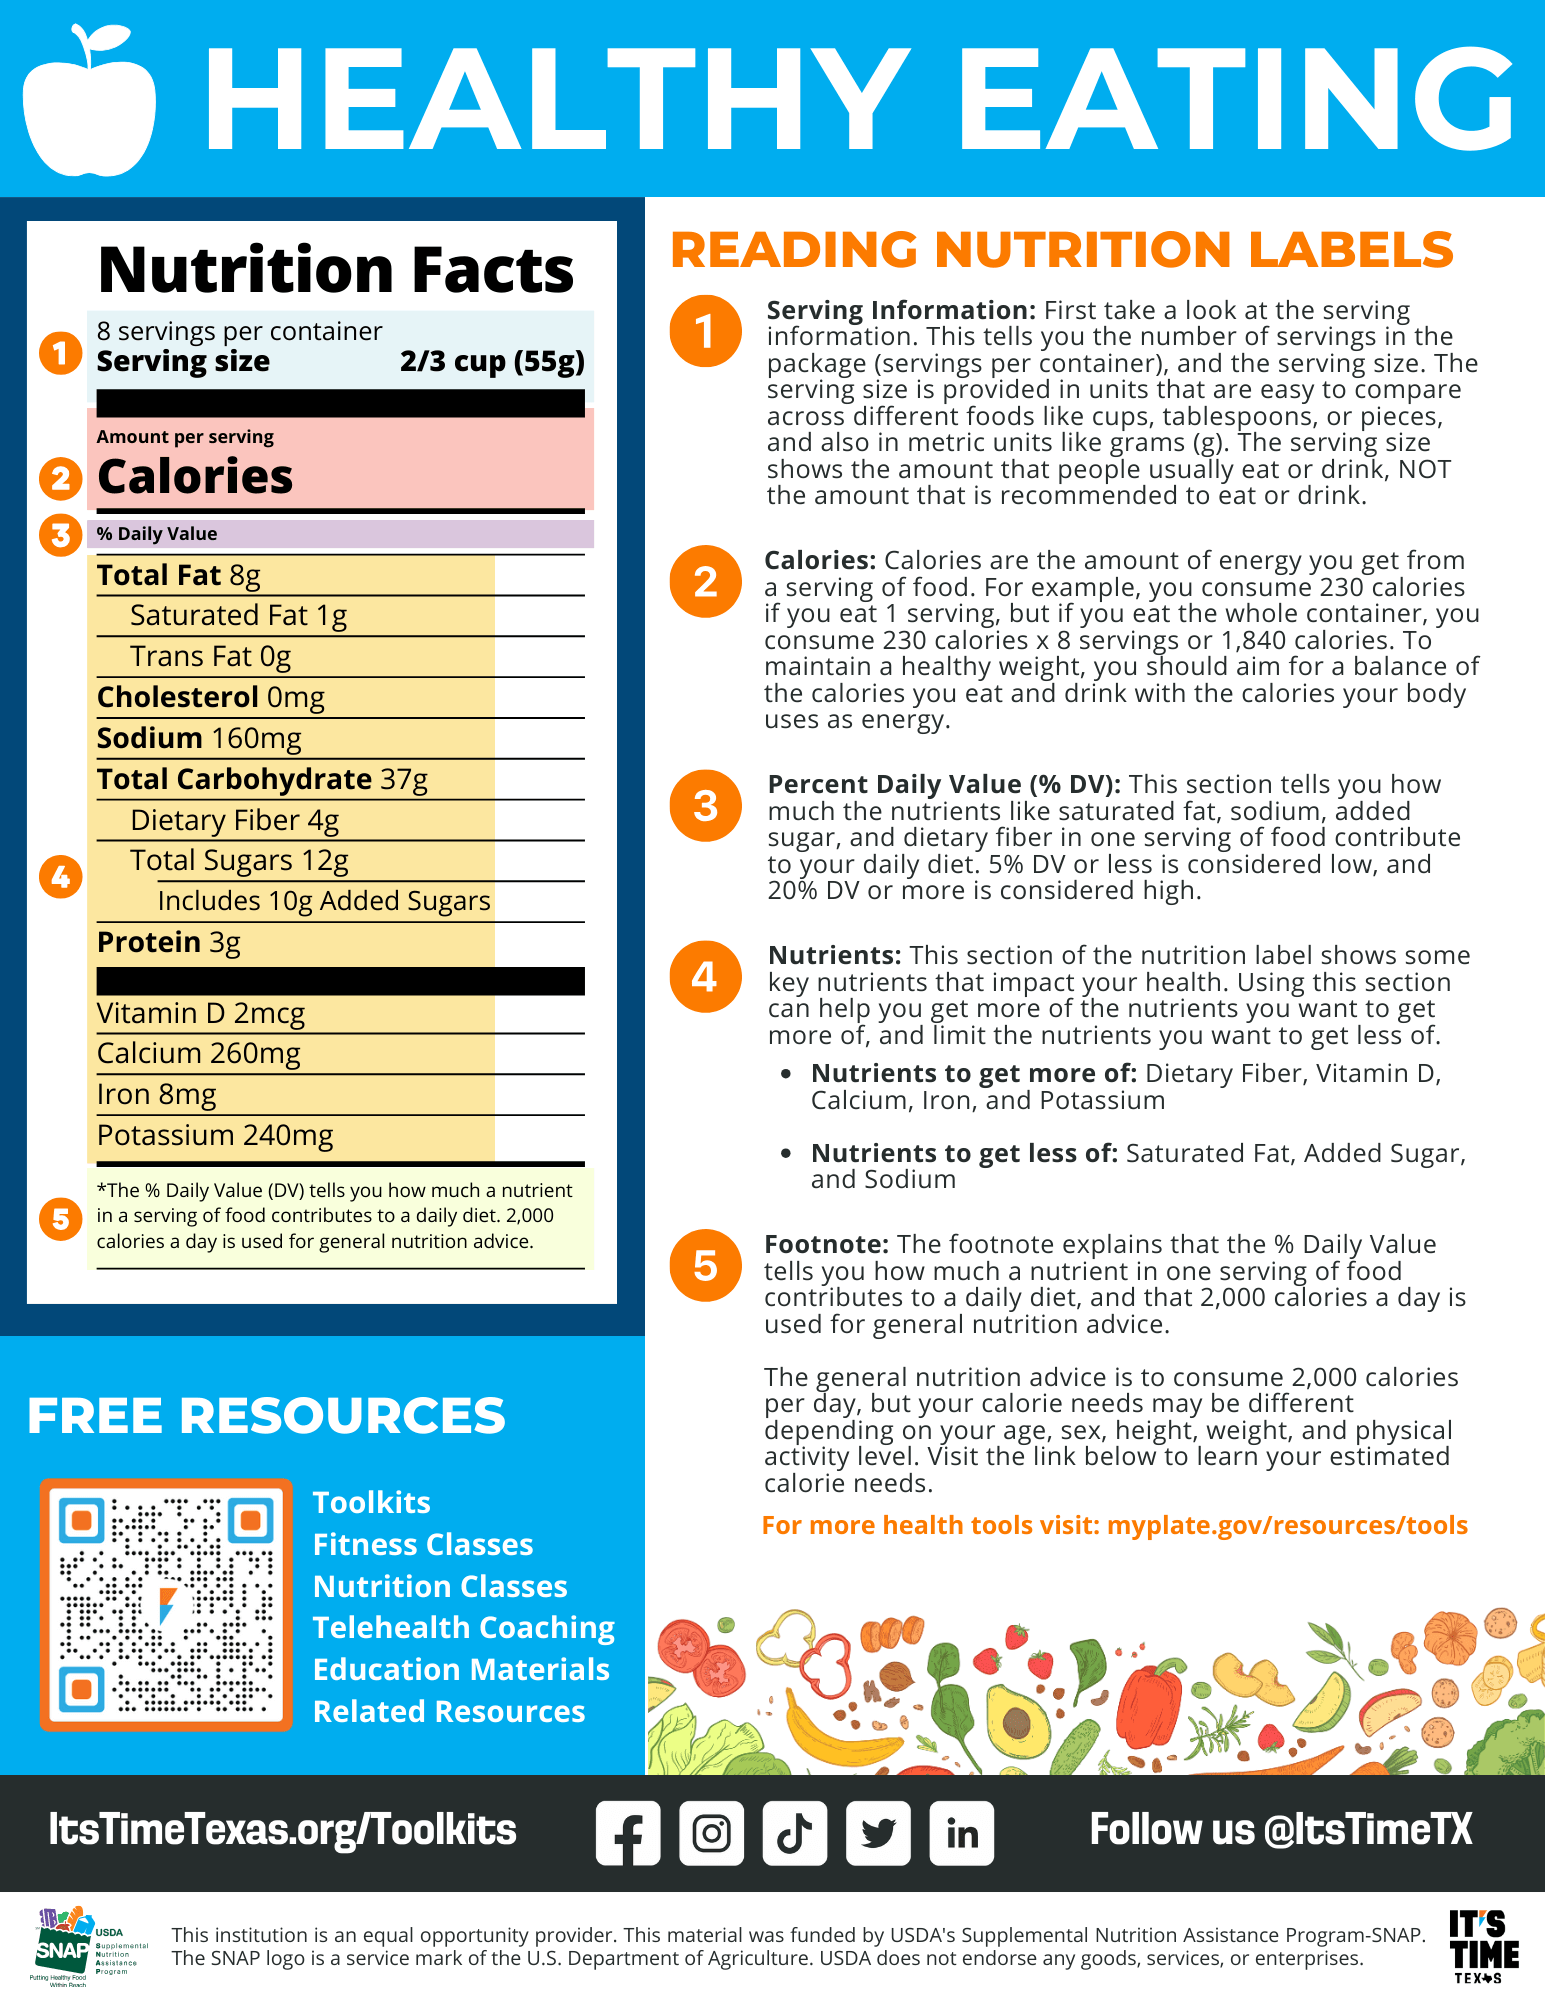 Leer etiquetas nutricionales